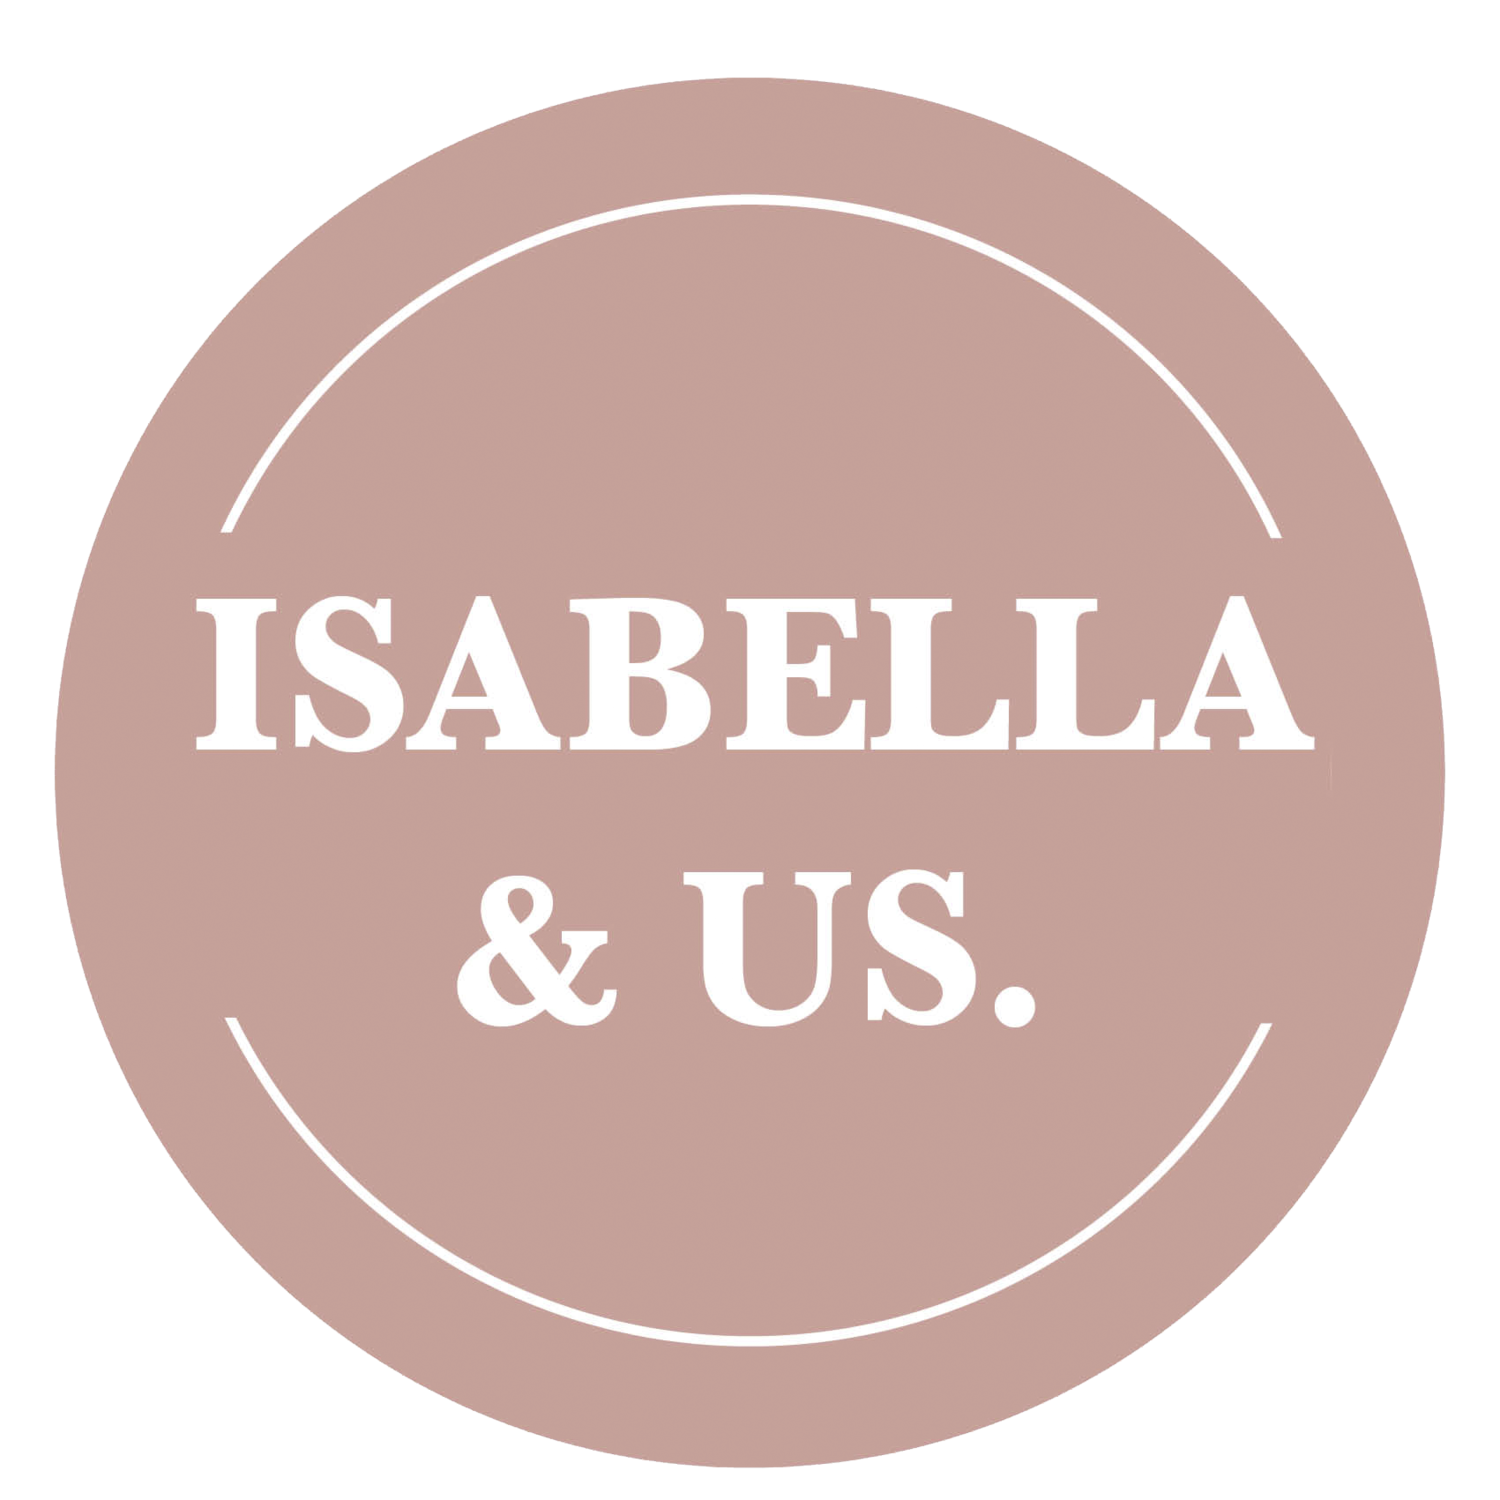 Isabella Us logo.png